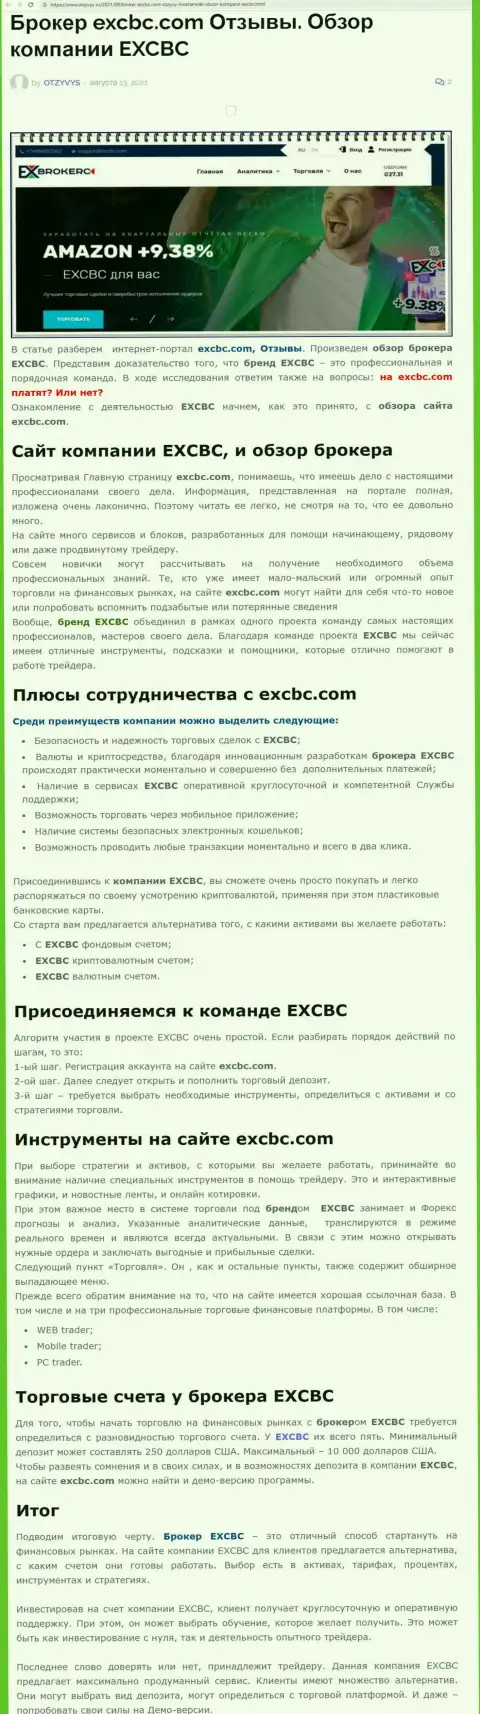 Информационный материал об forex организации EXCBC на сайте otzyvys ru